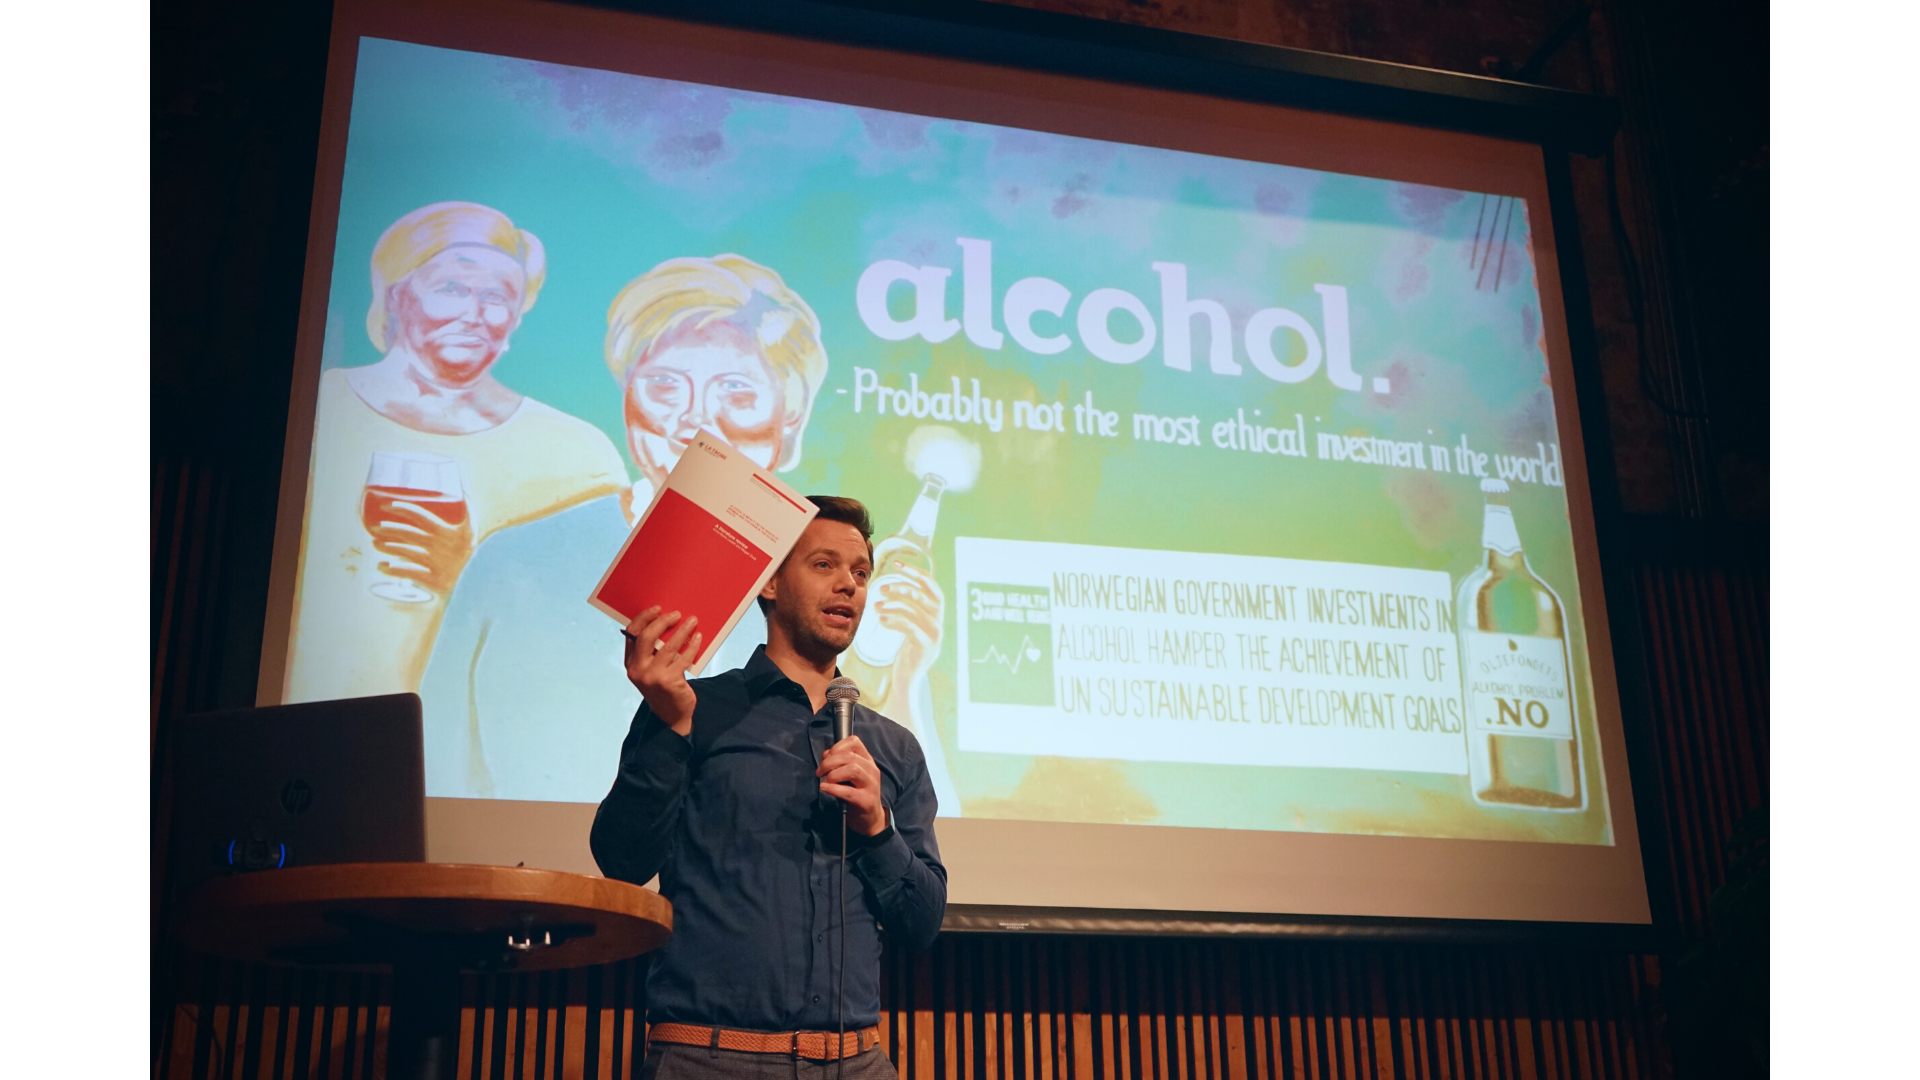 Nils Johan presenterer rapport foran en powerpoint side hvor det står "alcohol"